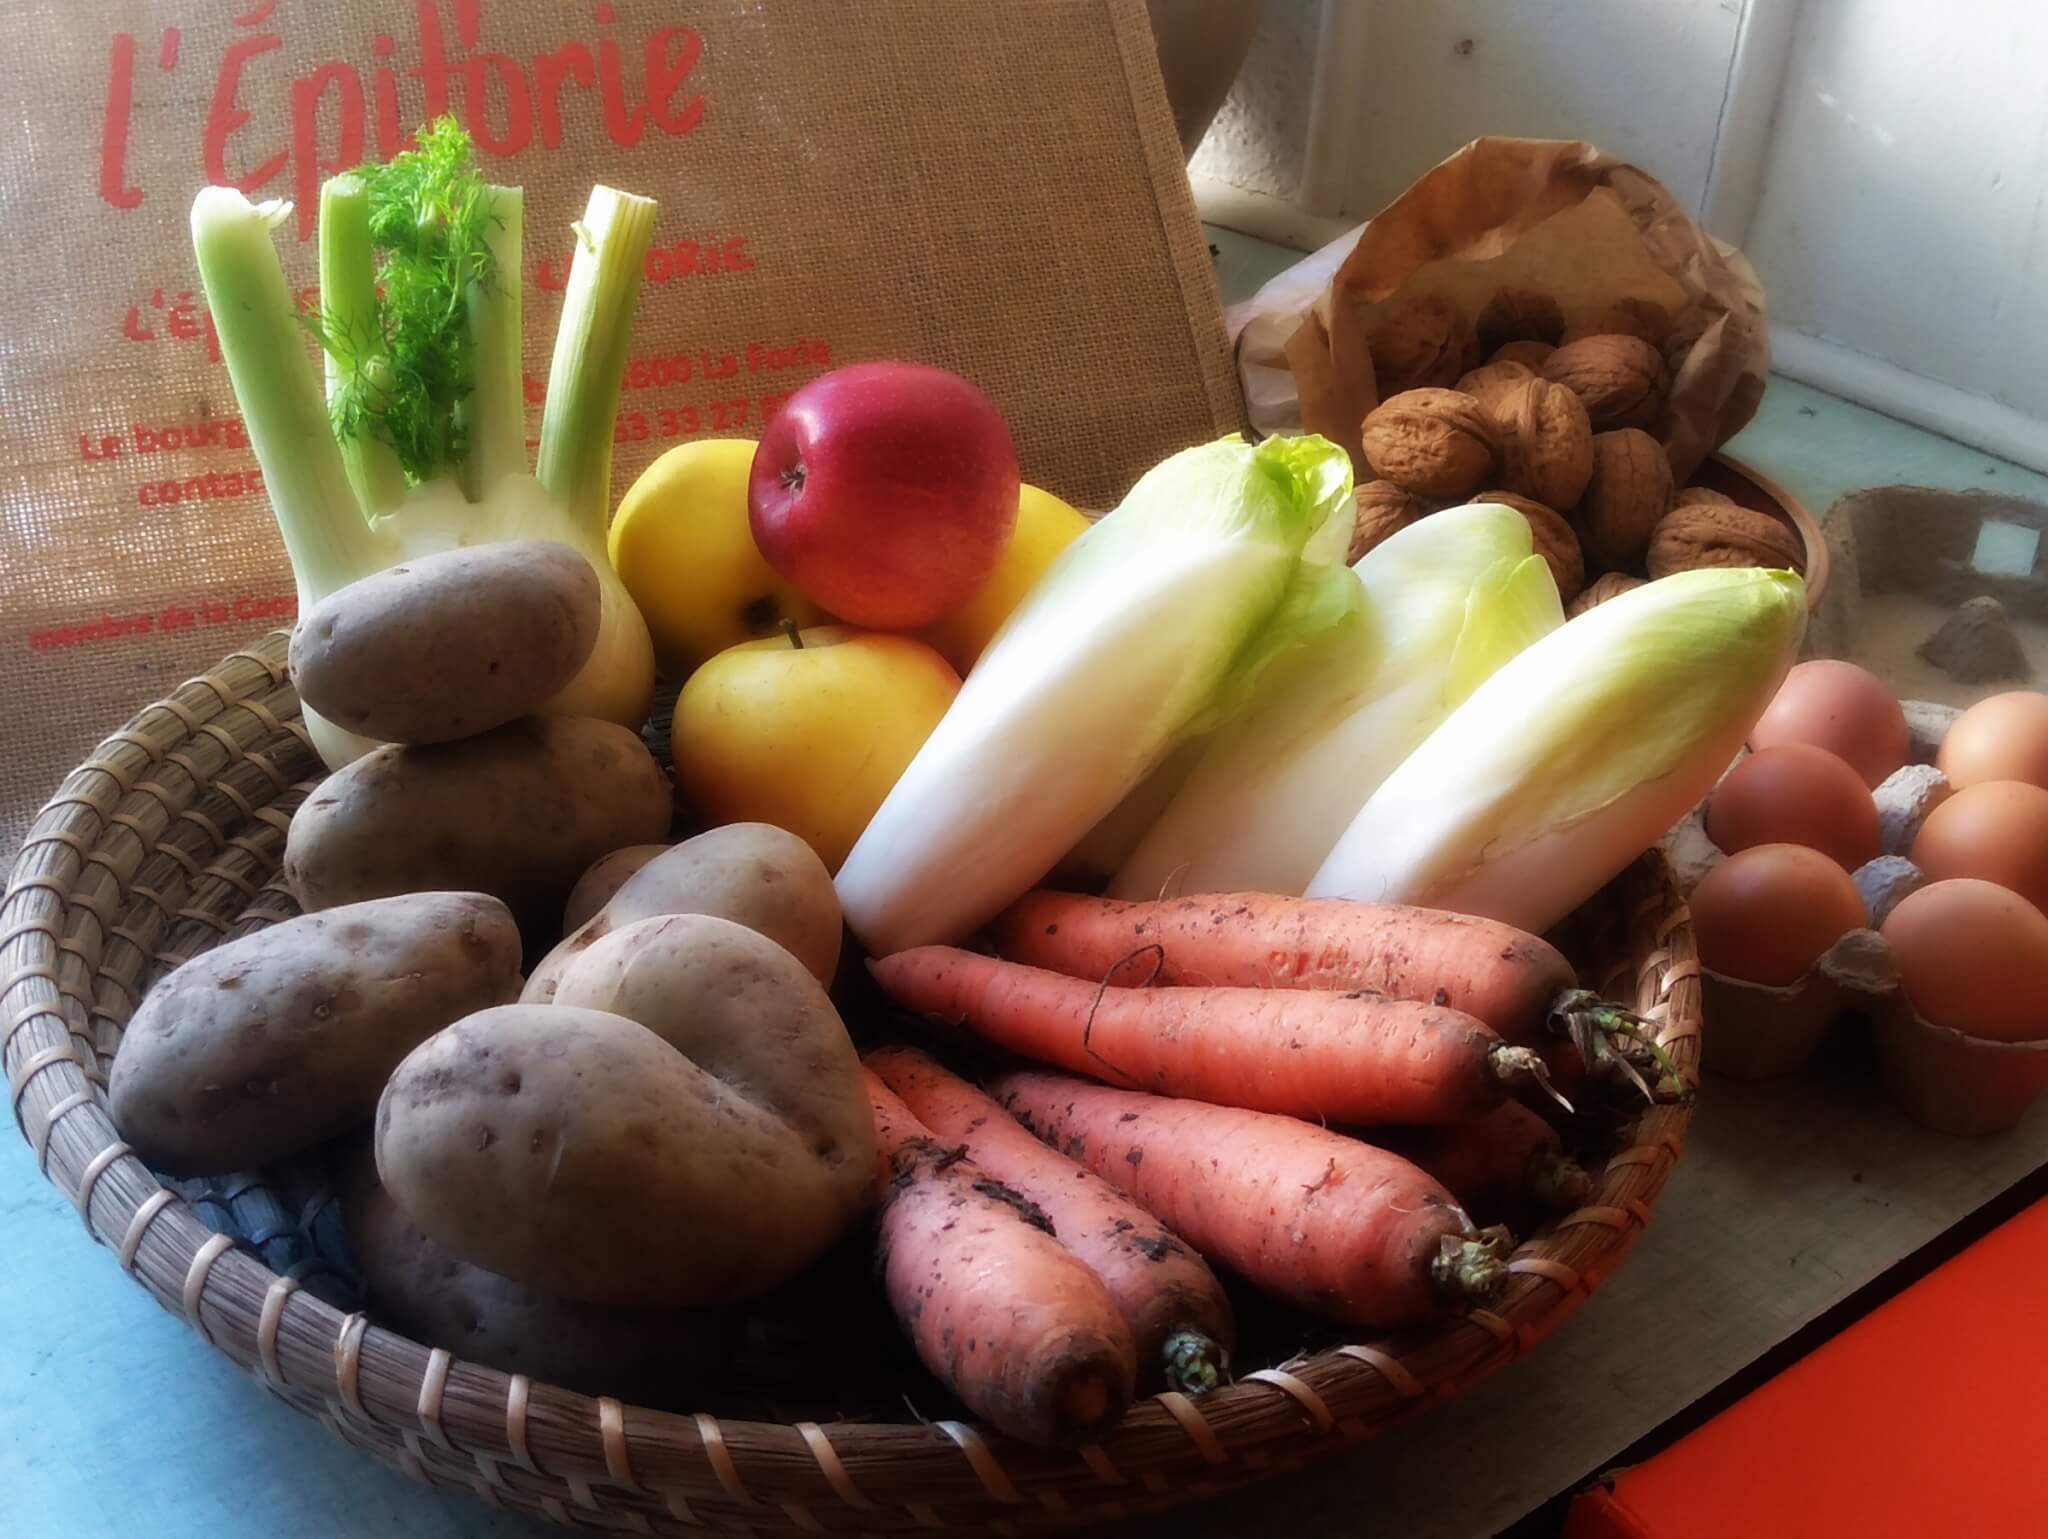 Panier de fruits et légumes avec pommes de terre, carottes, céleri, œufs, pommes et noix.